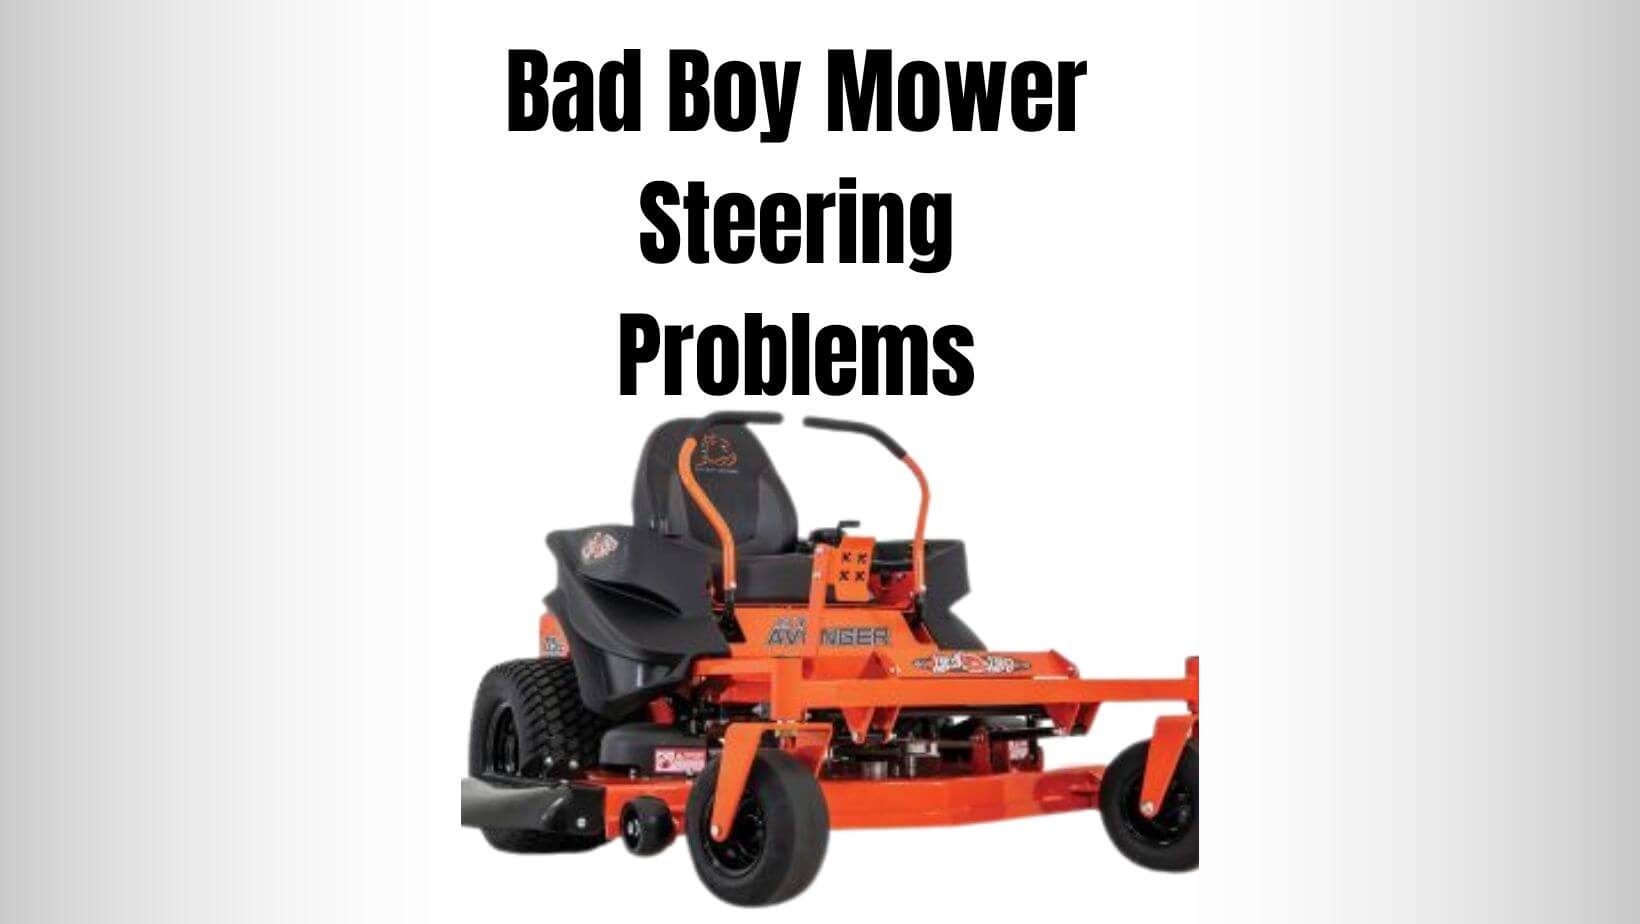 Bad Boy Mower Steering Problems